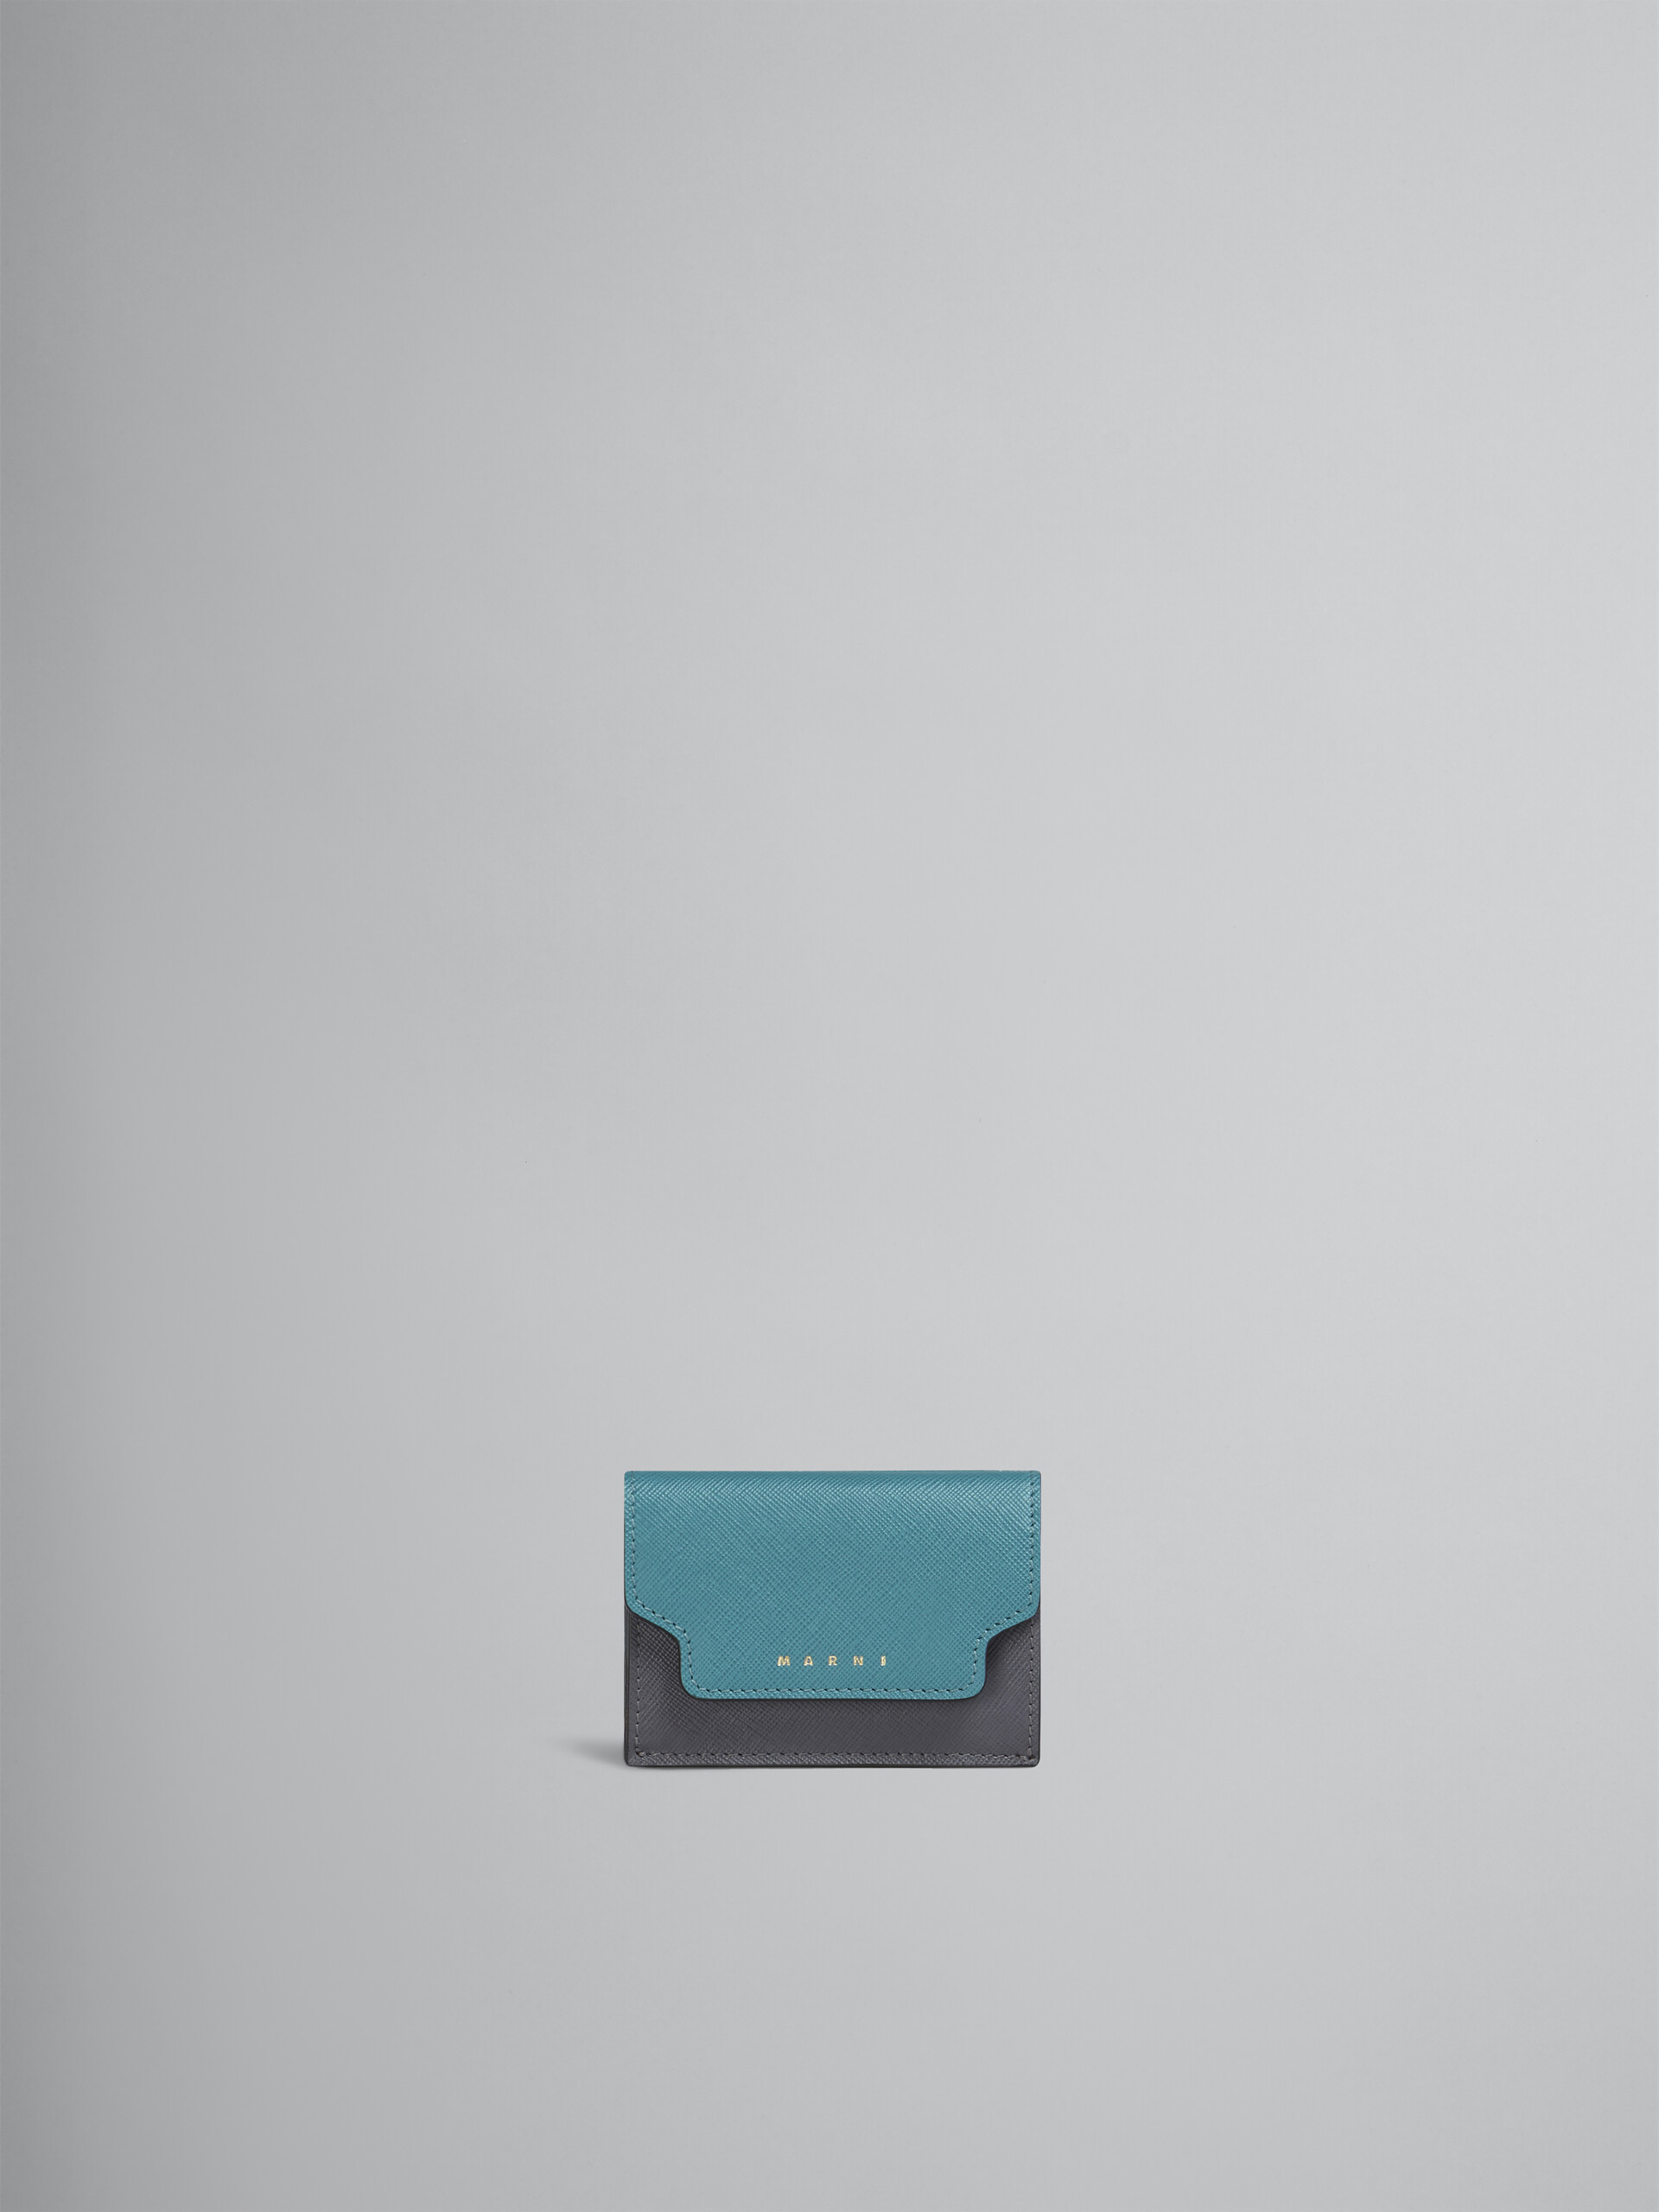 Portafoglio tri-fold in saffiano blu grigio bordeaux - Portafogli - Image 1